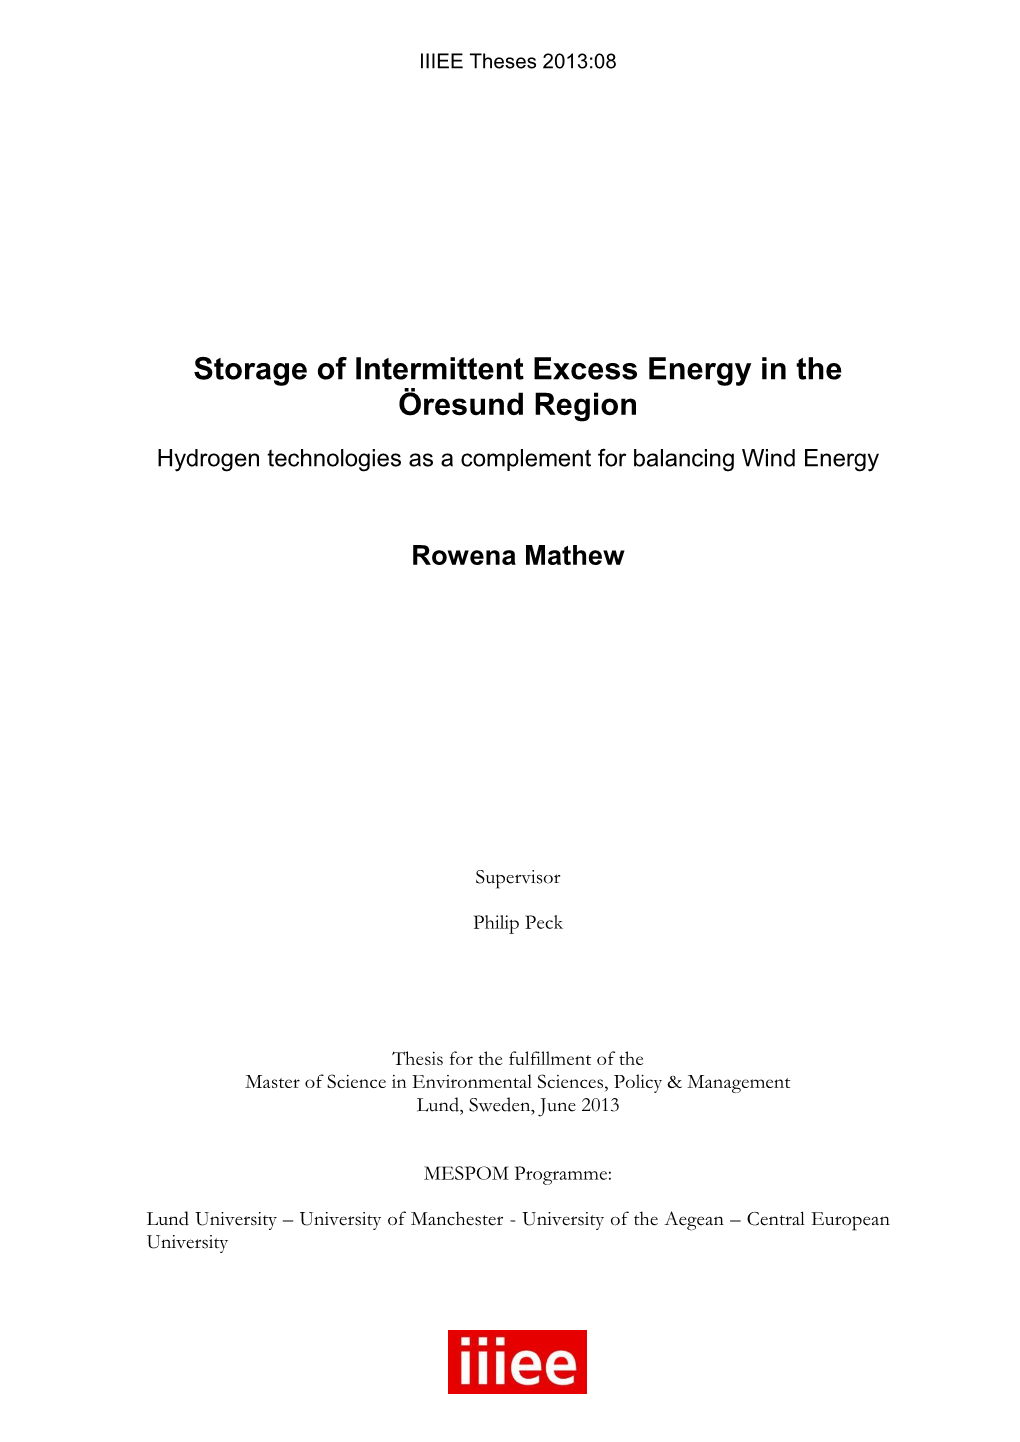 Storage of Intermittent Excess Energy in the Öresund Region